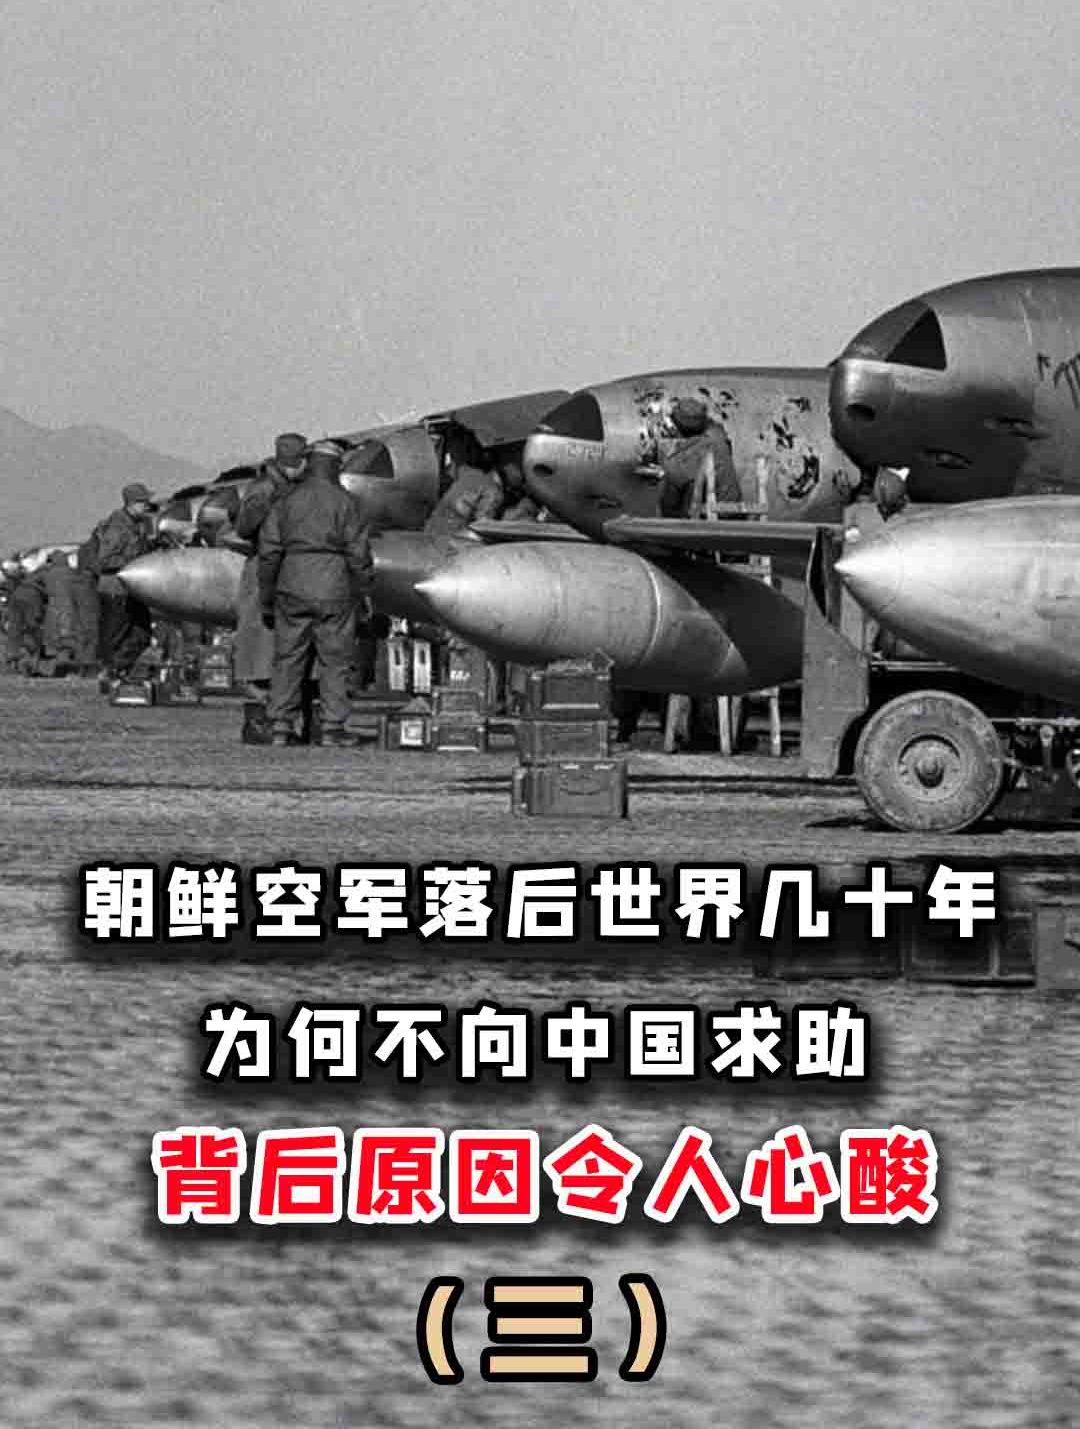 朝鲜空军落后世界20年,为何不向中国买先进战机?原因辛酸无助